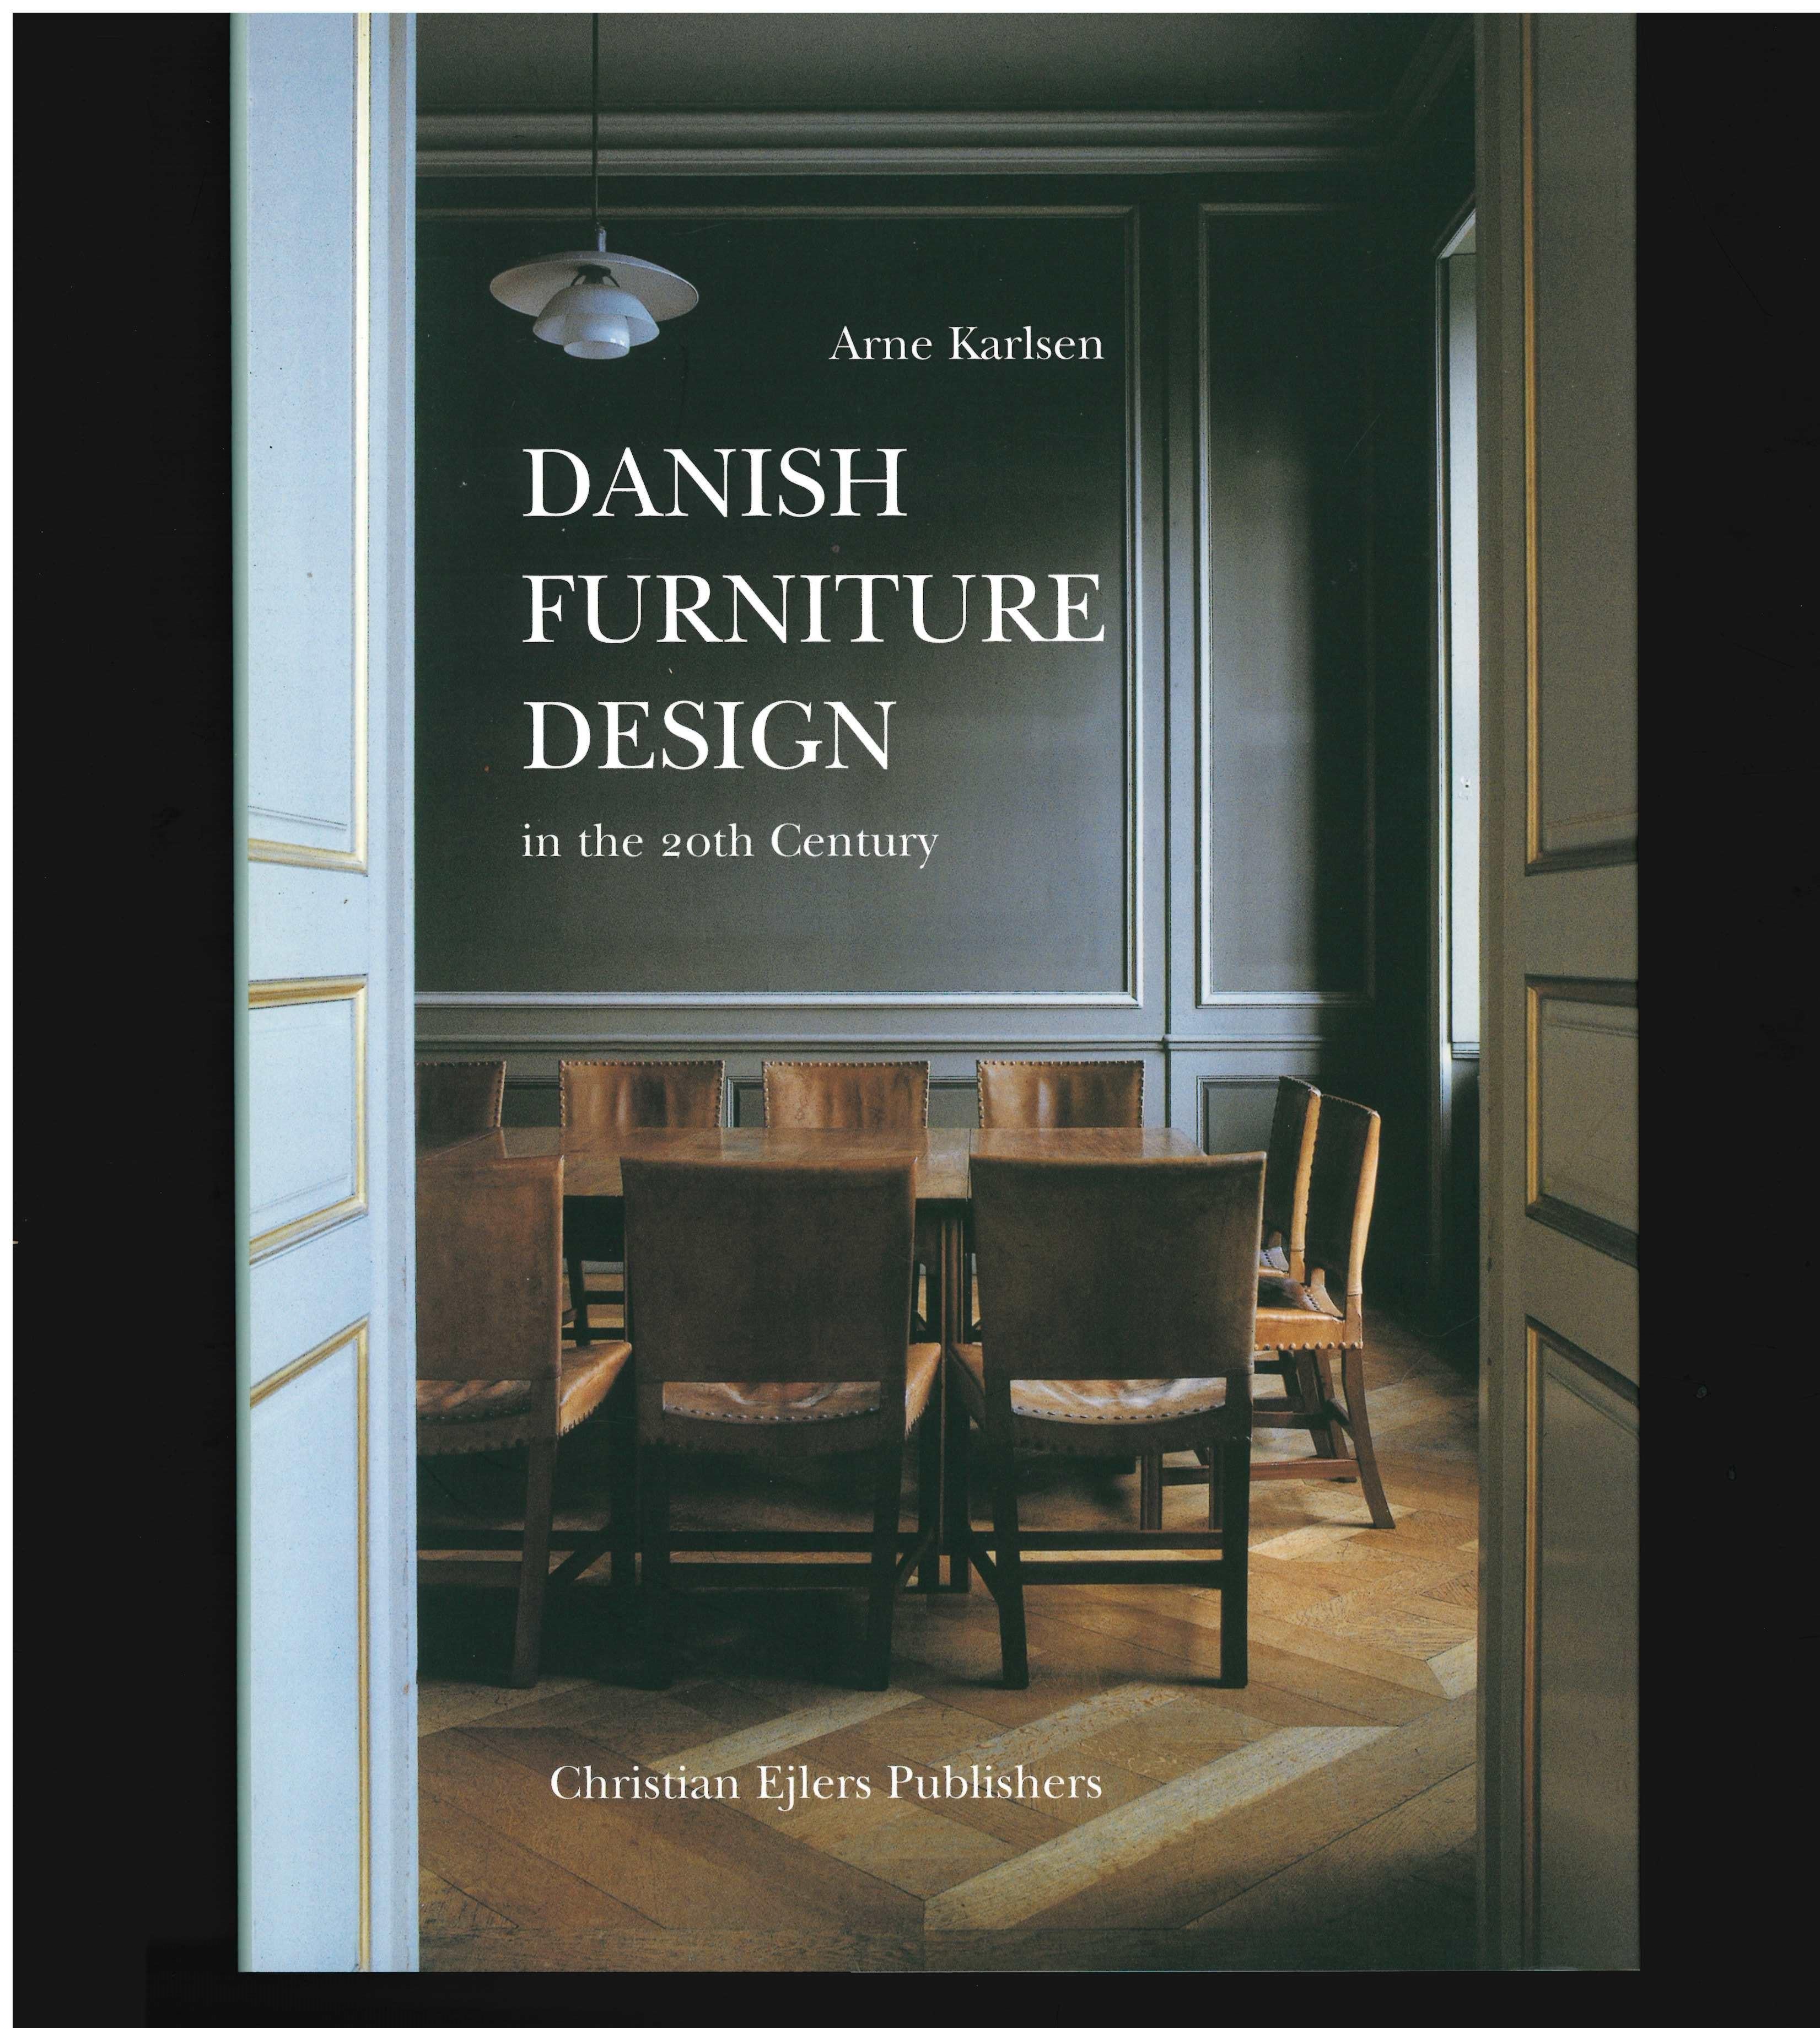 Ein zweibändiges Werk, das einen gut dokumentierten und detaillierten Überblick über das dänische Möbeldesign im 20. Jahrhundert bietet, mit einem breit angelegten, illustrierten Teil, der die sozialen und technischen Bedingungen für die Möbel